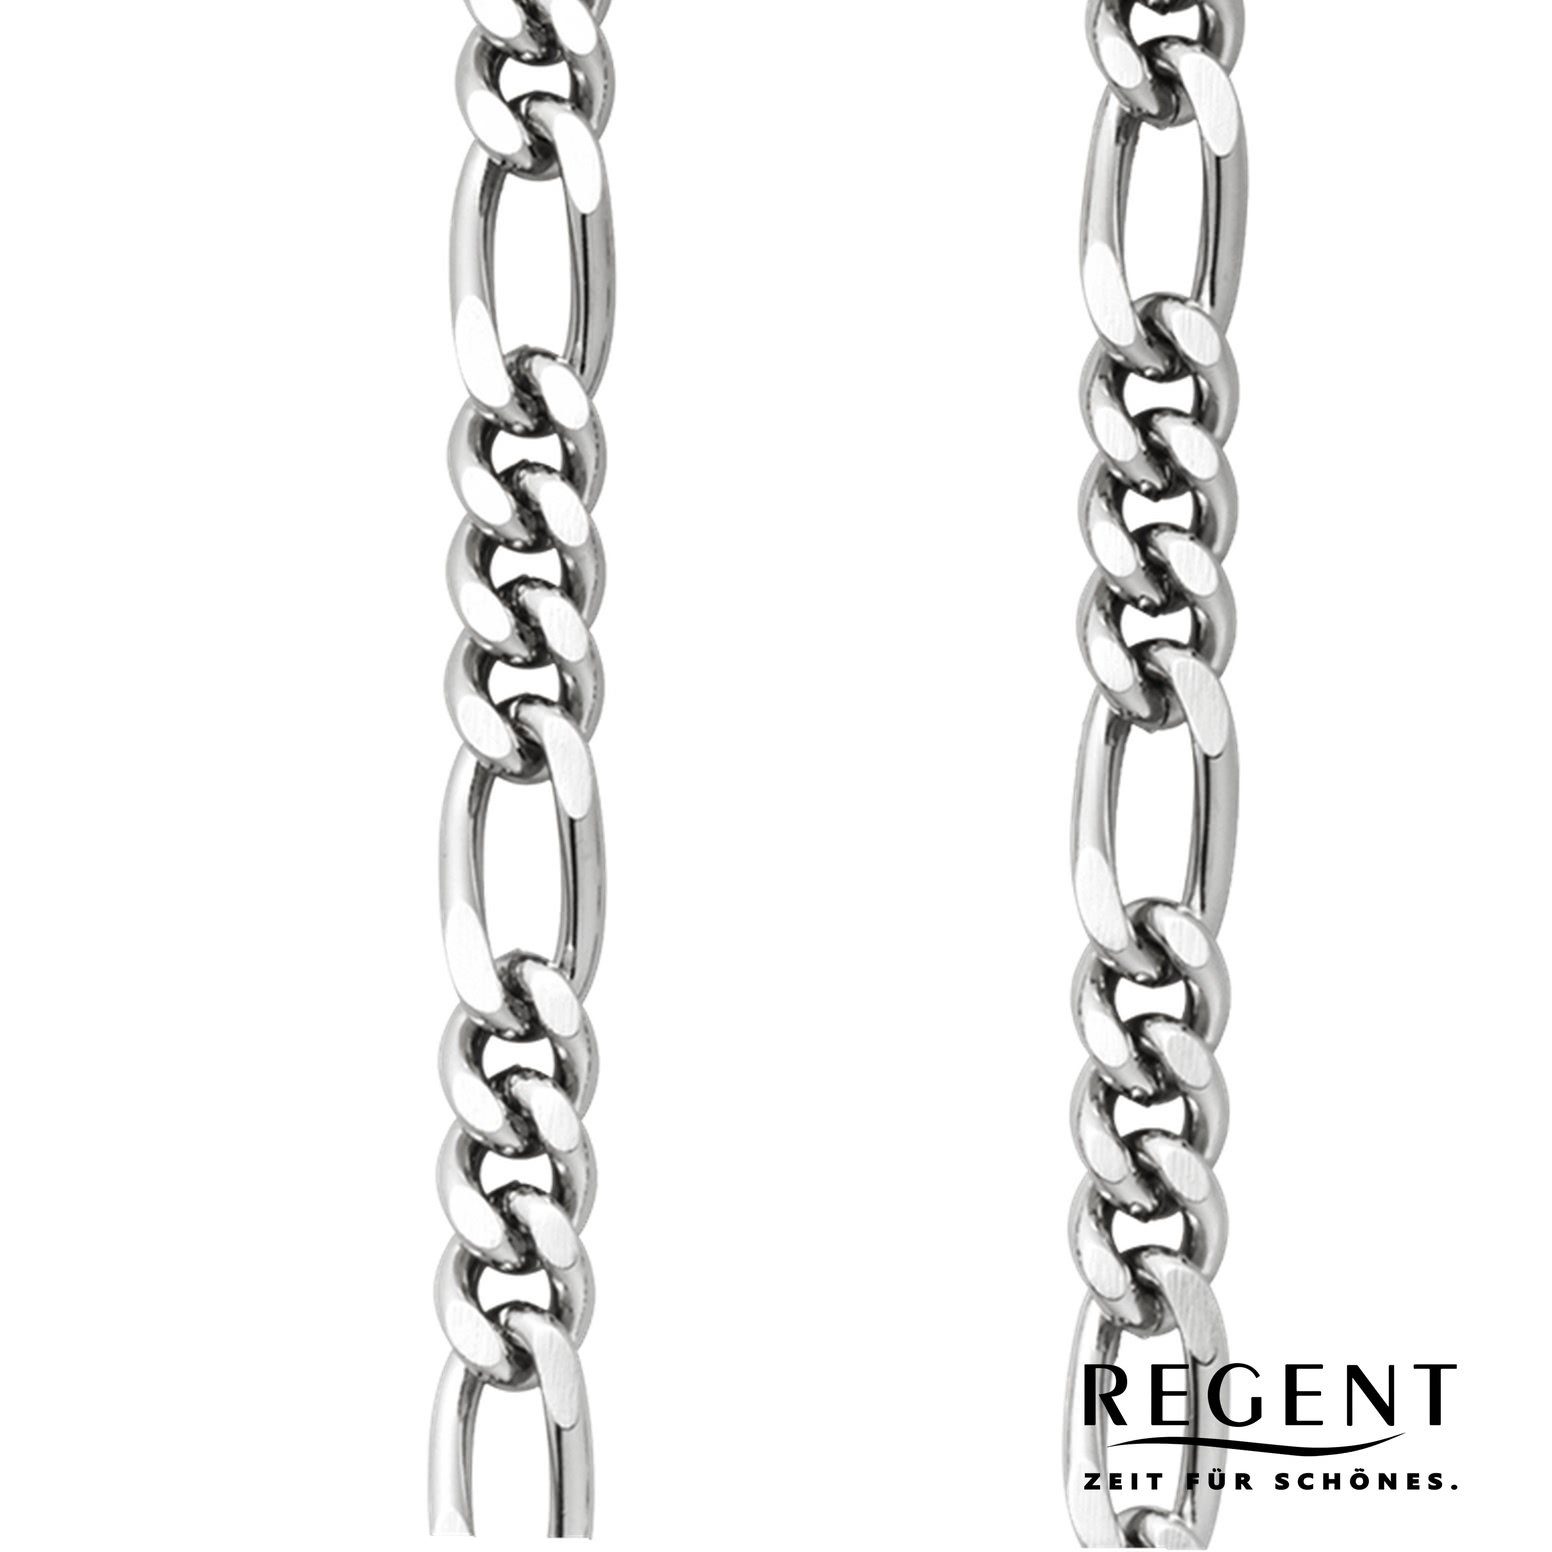 P-49 5mm Regent Herren Taschenuhrenkette, Taschenuhren-Kette Kettenuhr Elegant Figaro, Regent